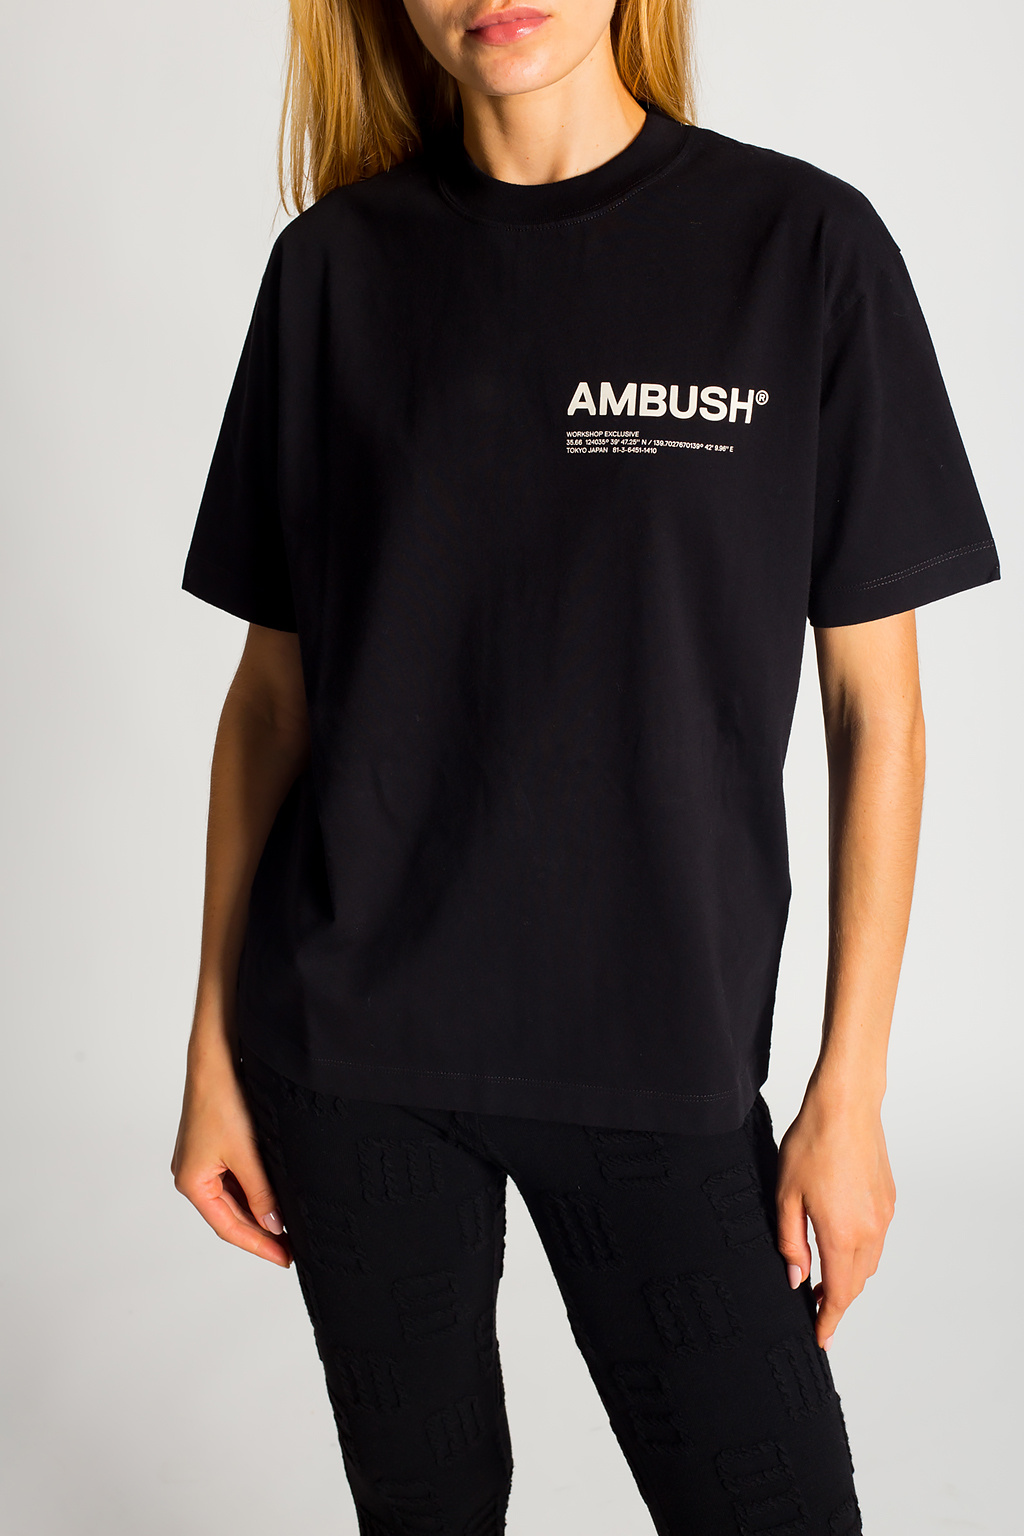 Ambush Nautica Dandy Men's T-Shirt